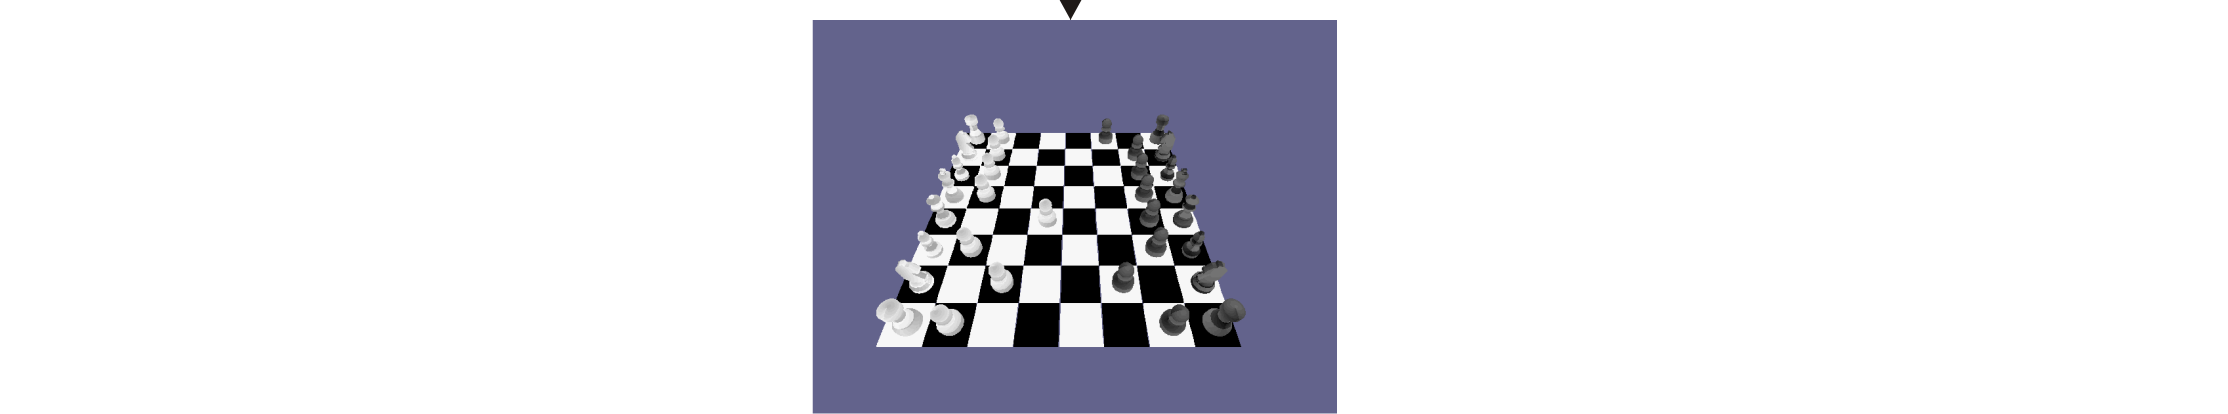 Realizace šachového automatu 34 Obr.